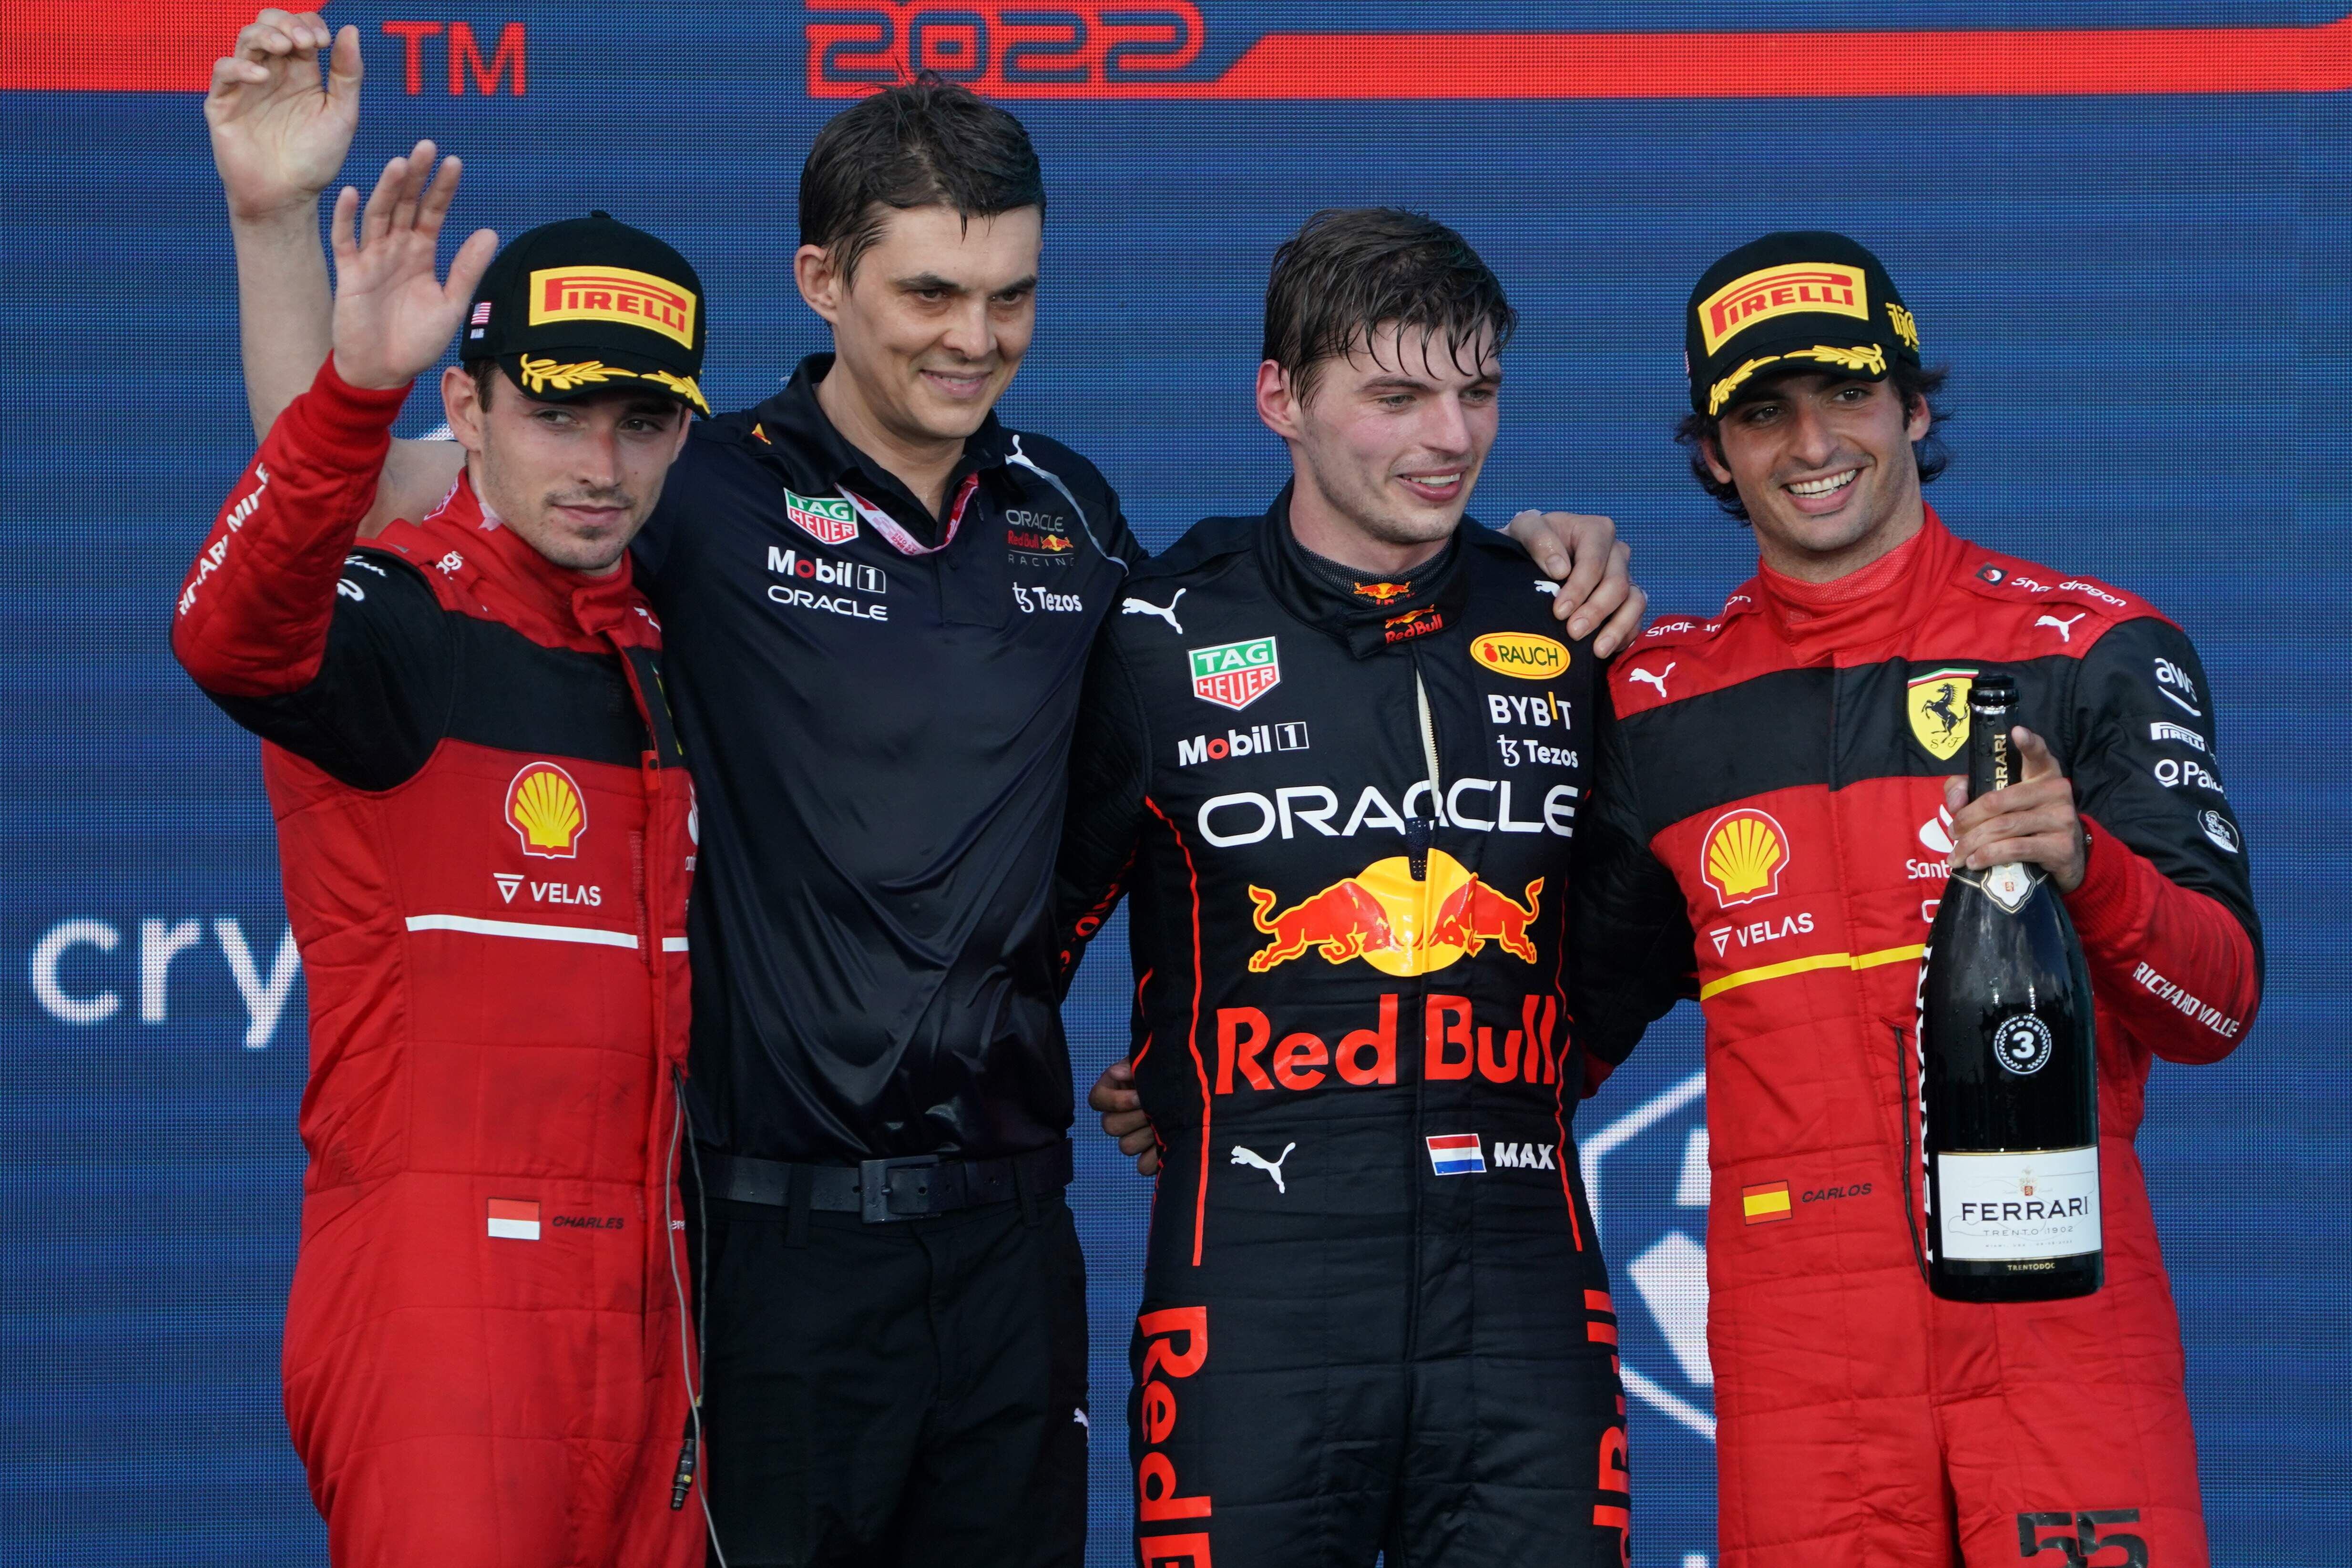 Primer podio de Miami, con Max Verstapen, Charles Leclerc y Carlos Sainz.